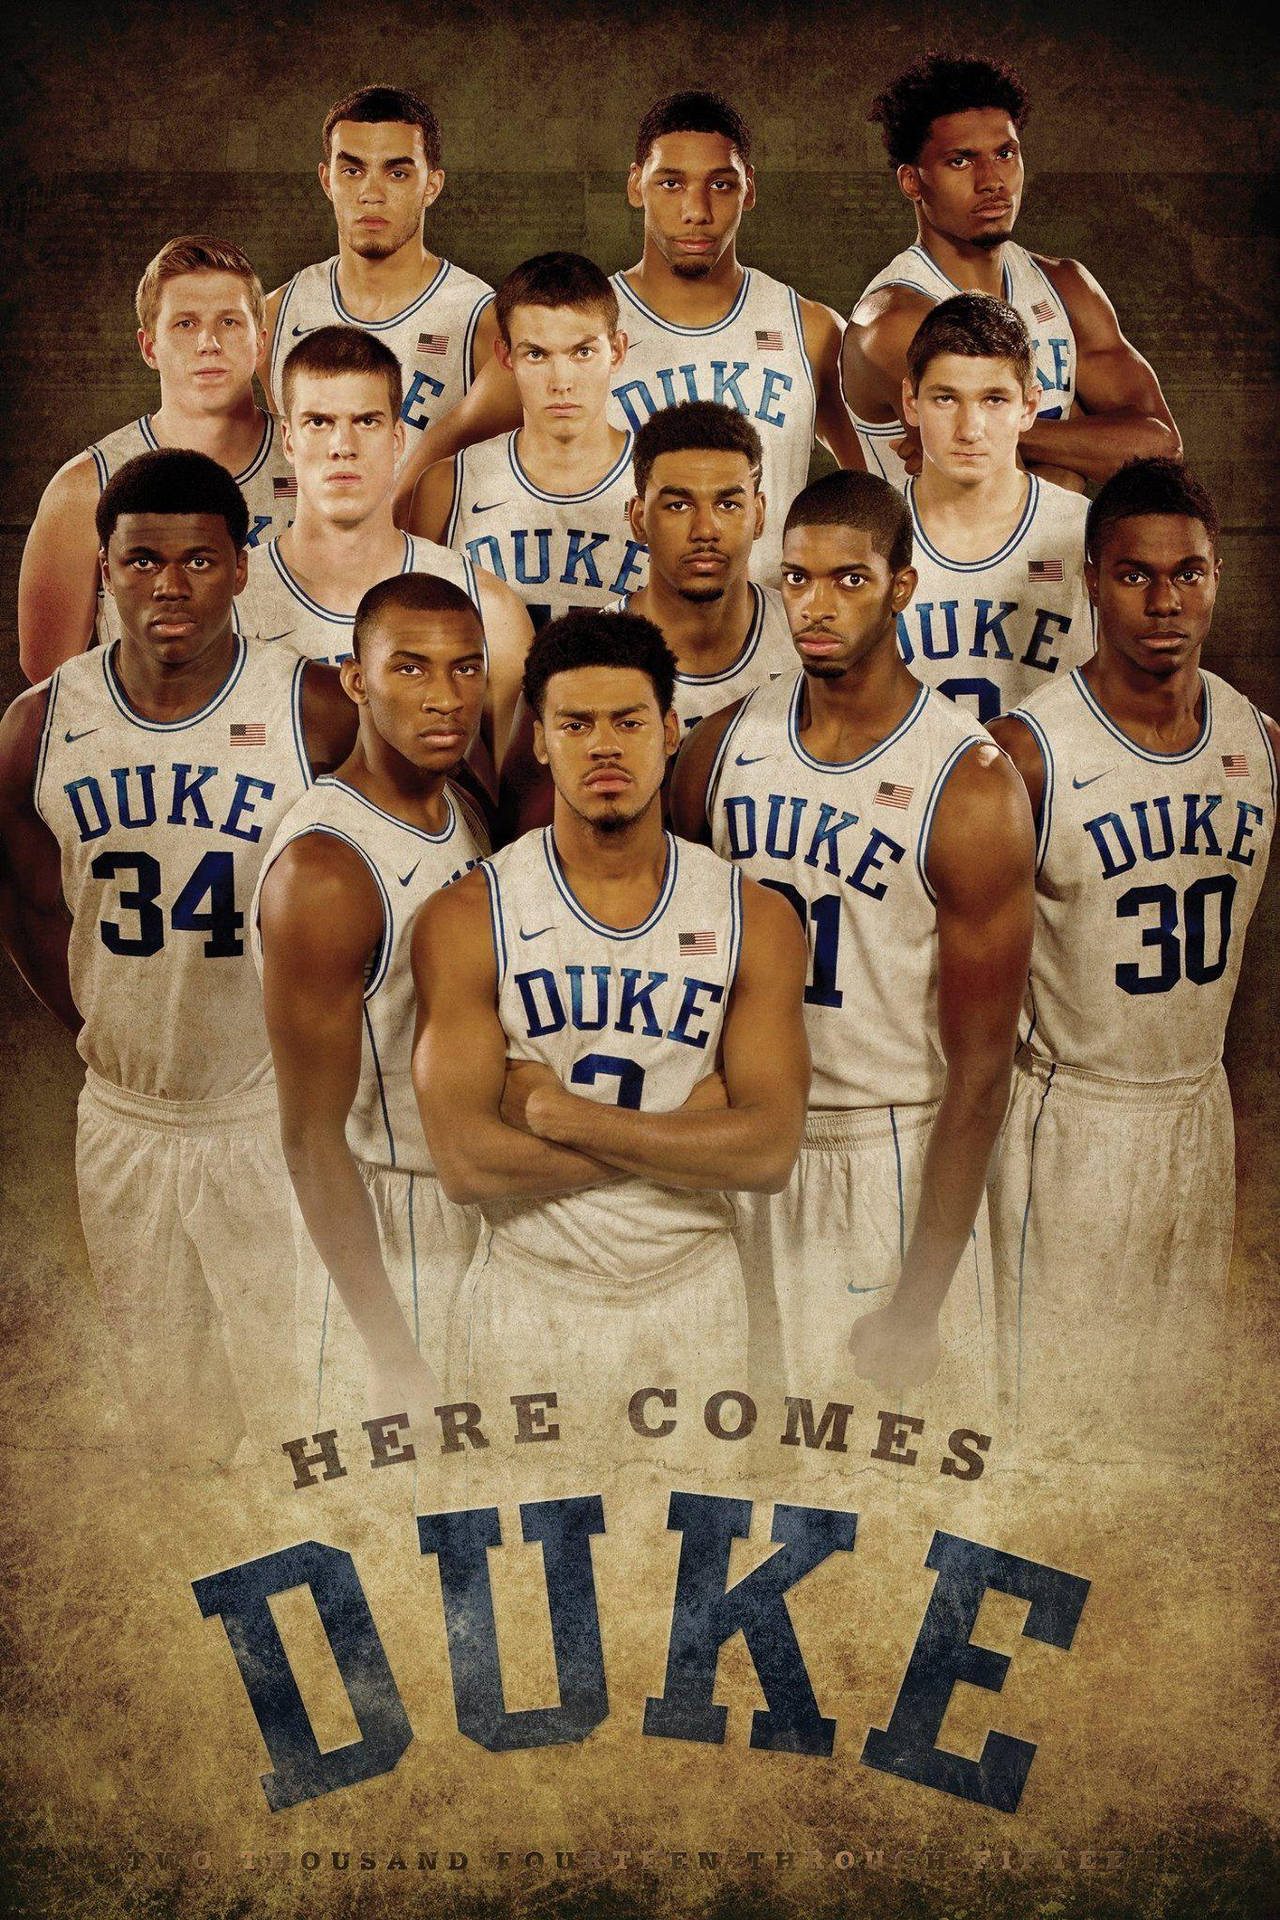 Duke Blue Devils Basketball Team Background